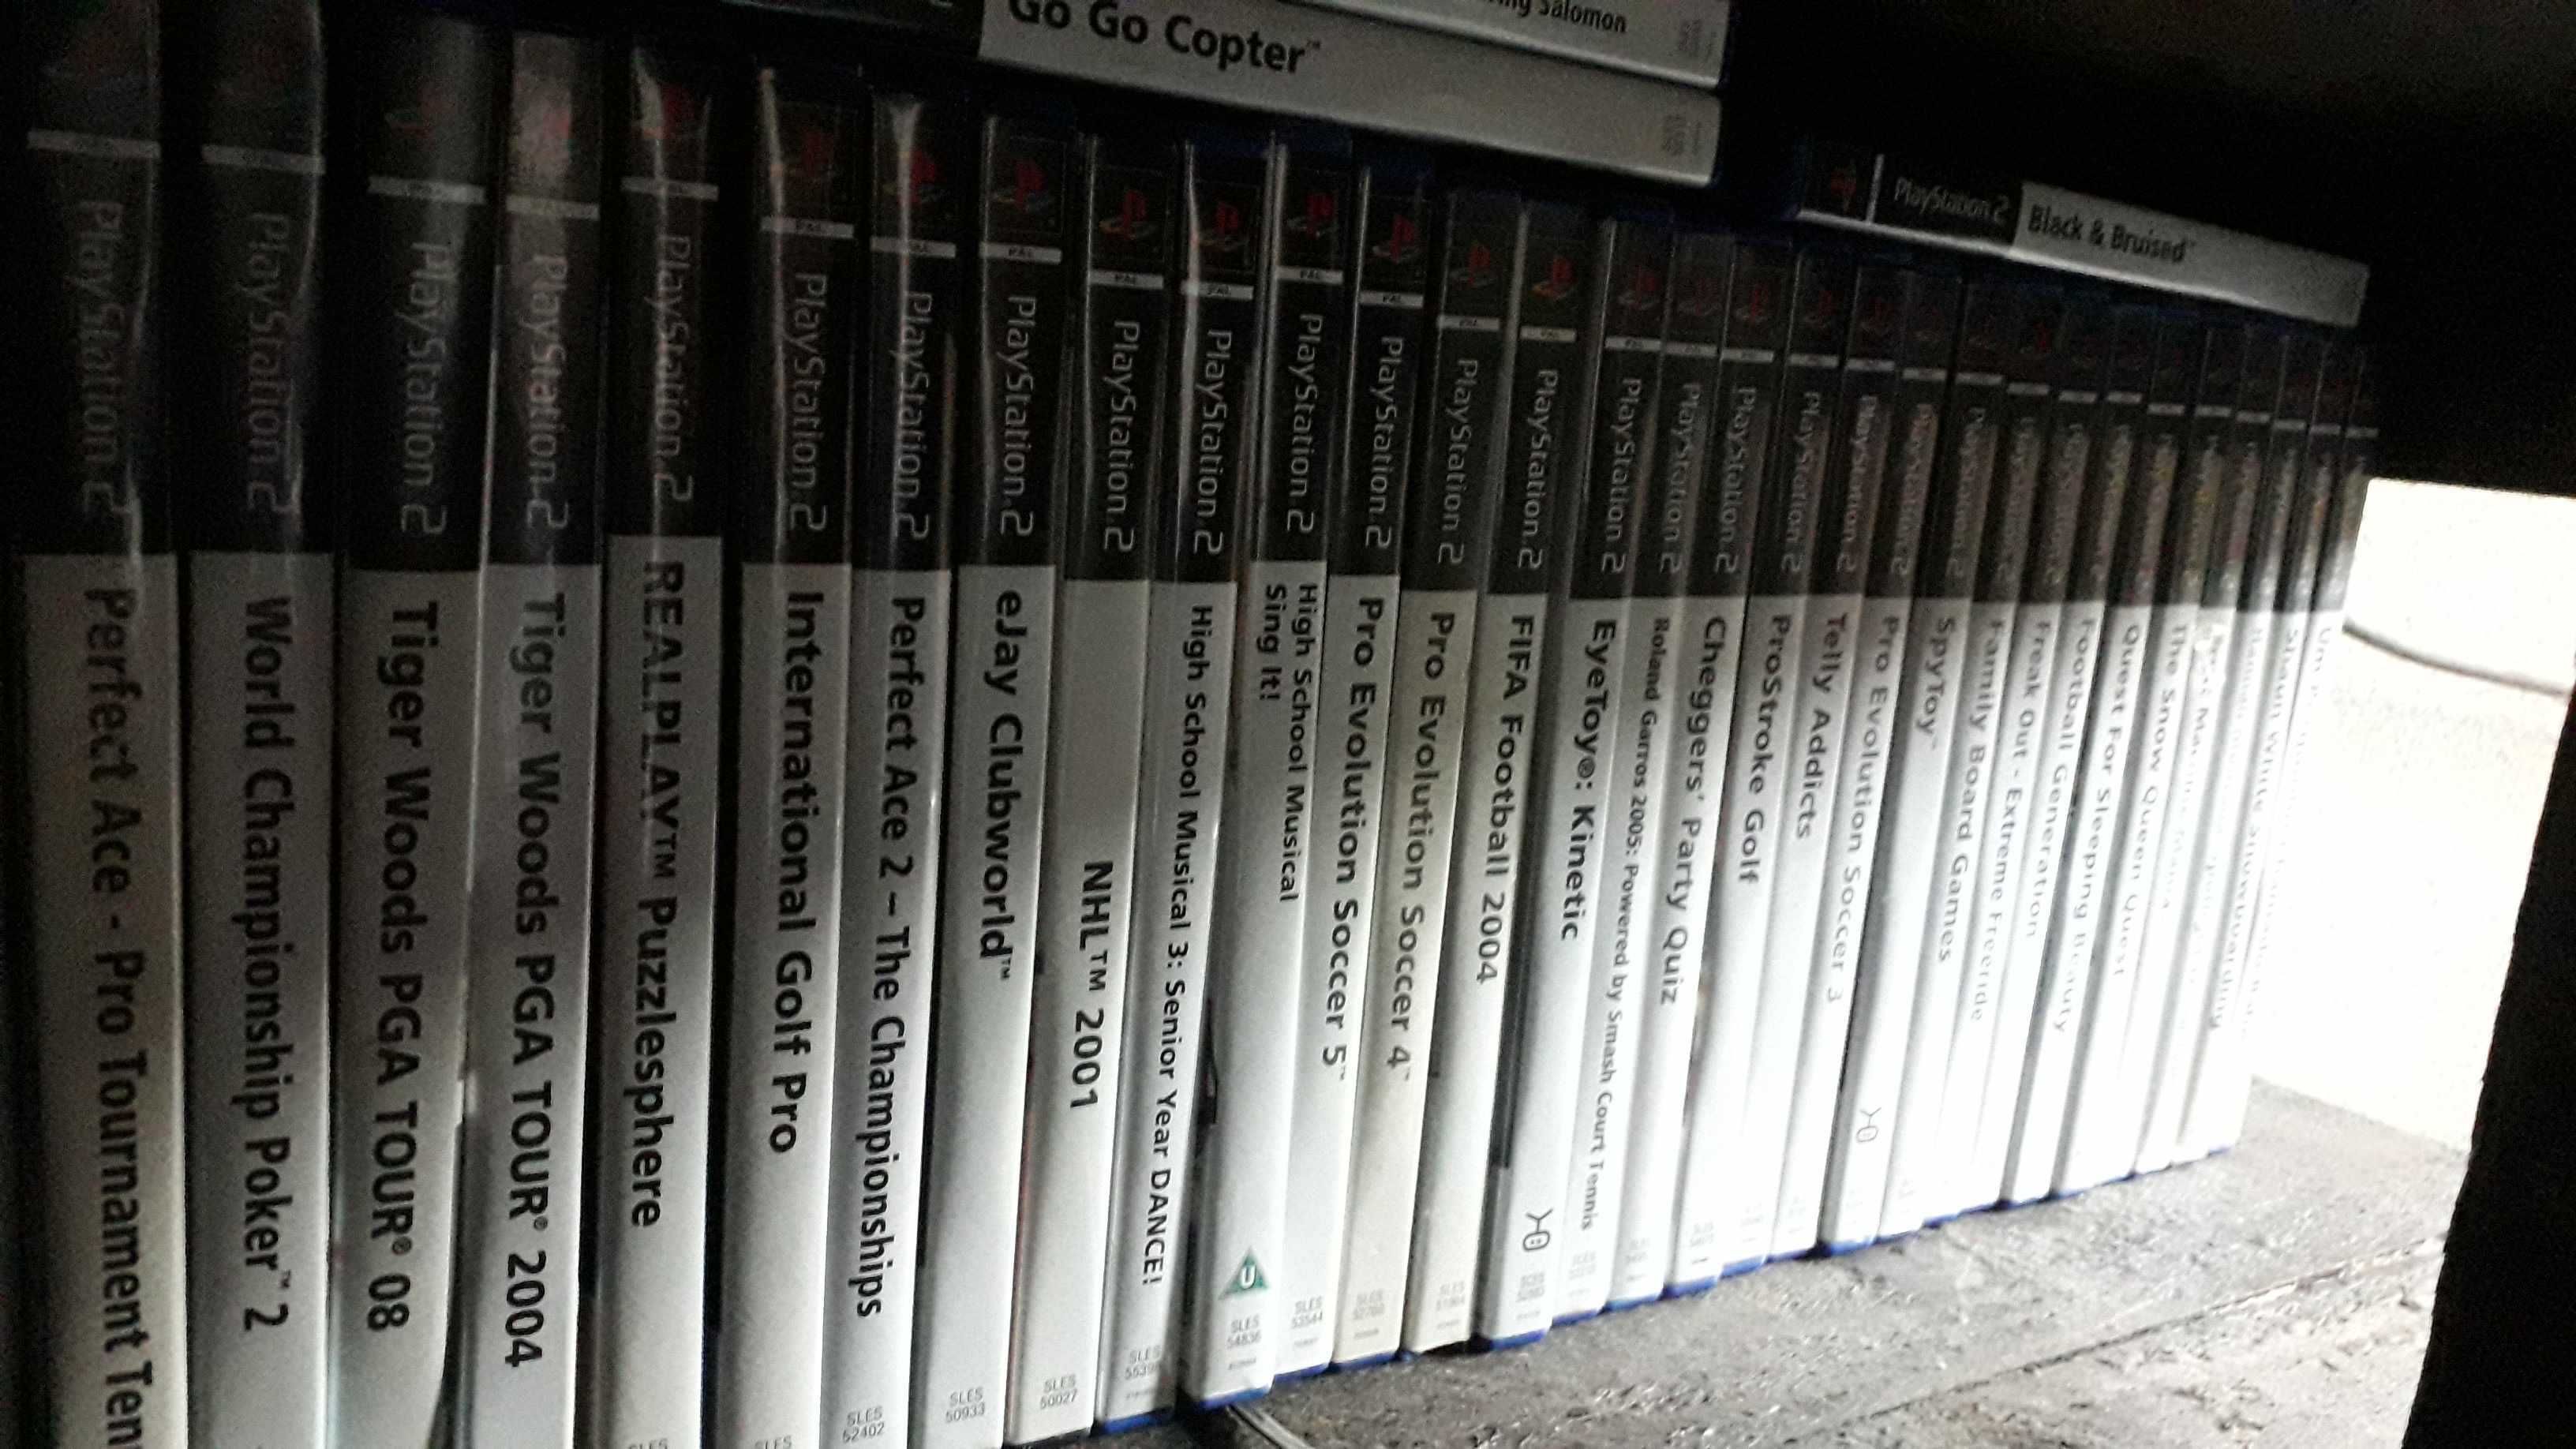 138 jogos PS2 diferentes ORIGINAIS!!